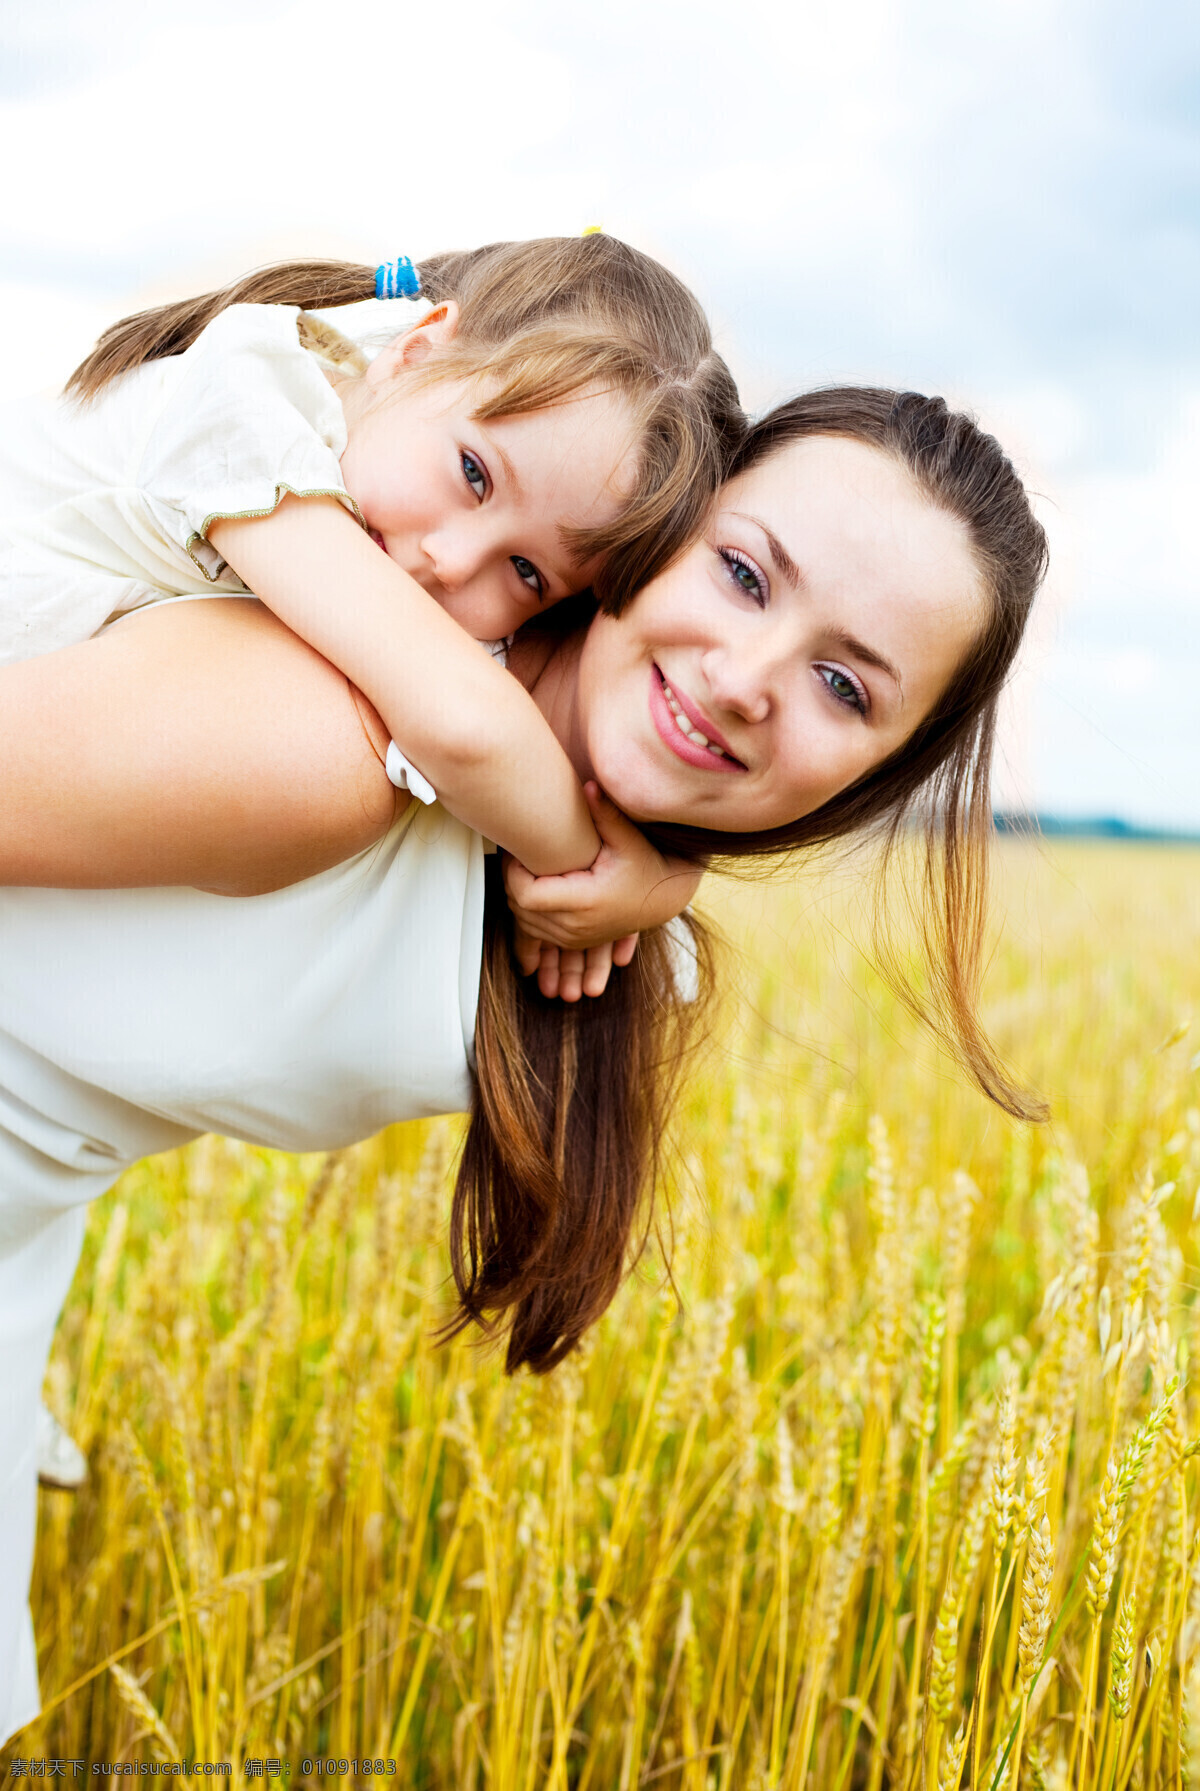 麦田里 妈妈 背着 快乐 小女孩 母亲 一家人 幸福 儿童 孩子 幼儿 宝贝 麦地 麦子 小麦 麦田 儿童幼儿 人物图库